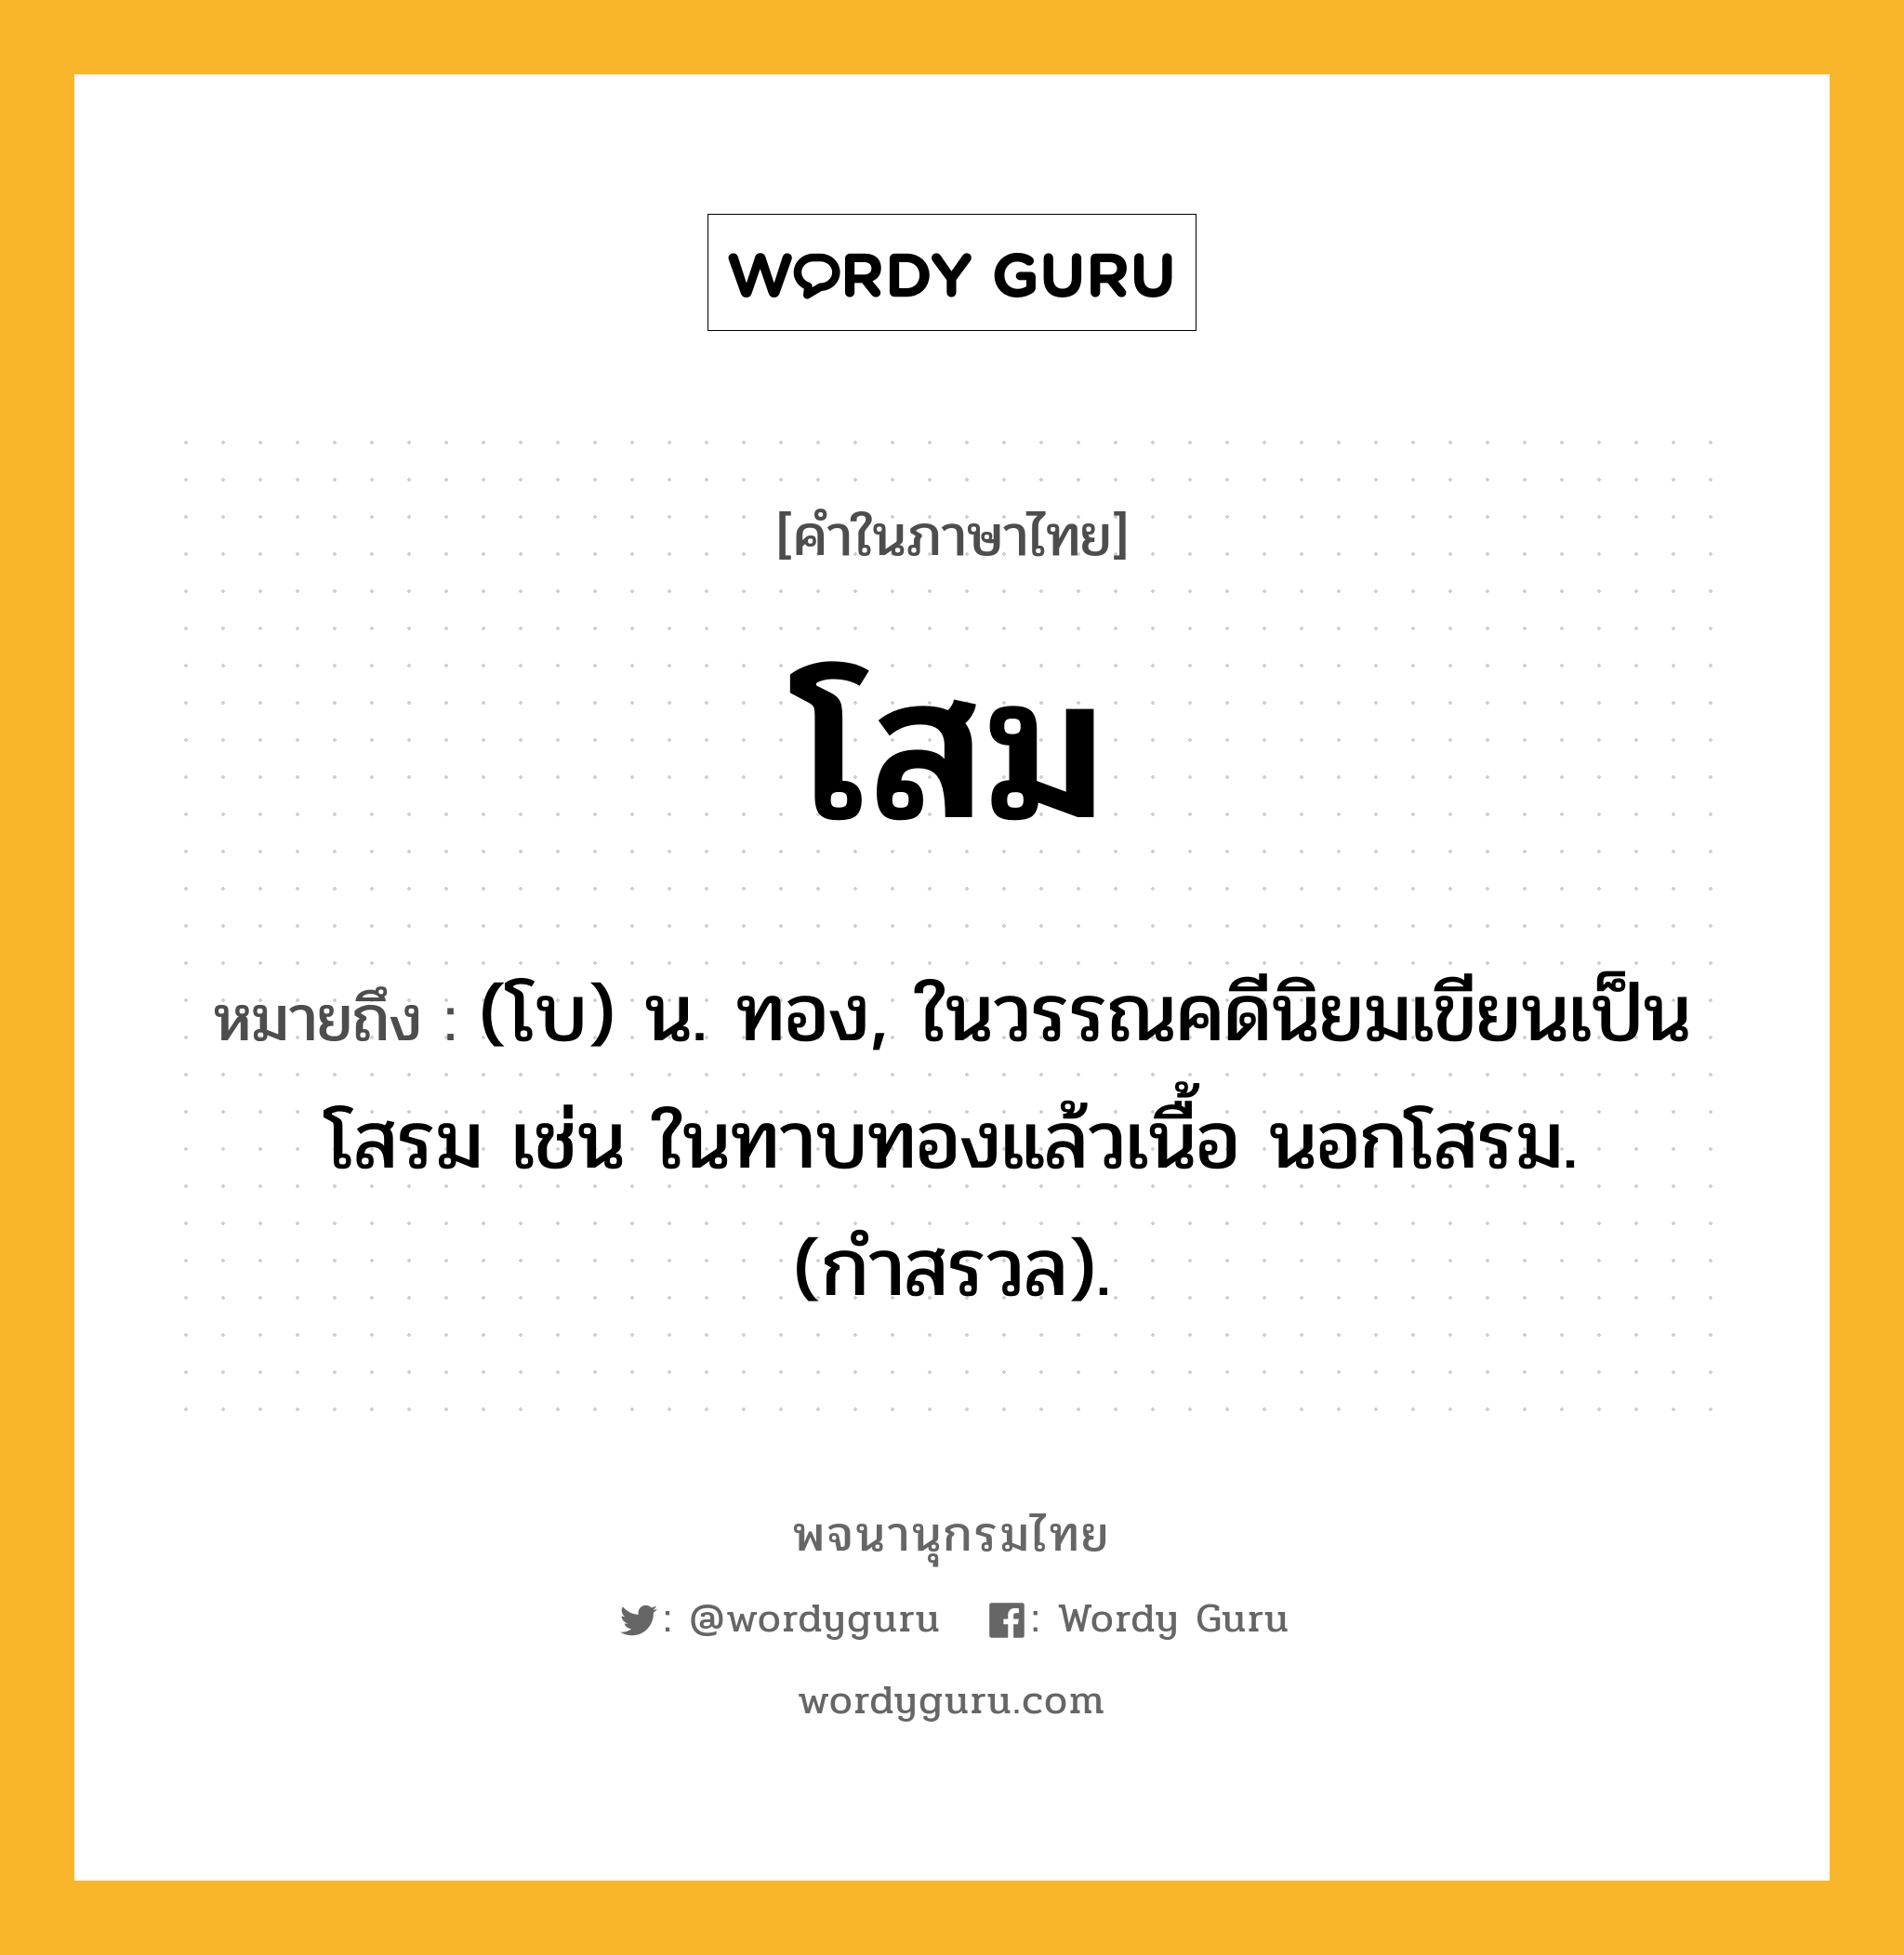 โสม หมายถึงอะไร?, คำในภาษาไทย โสม หมายถึง (โบ) น. ทอง, ในวรรณคดีนิยมเขียนเป็น โสรม เช่น ในทาบทองแล้วเนื้อ นอกโสรม. (กำสรวล).